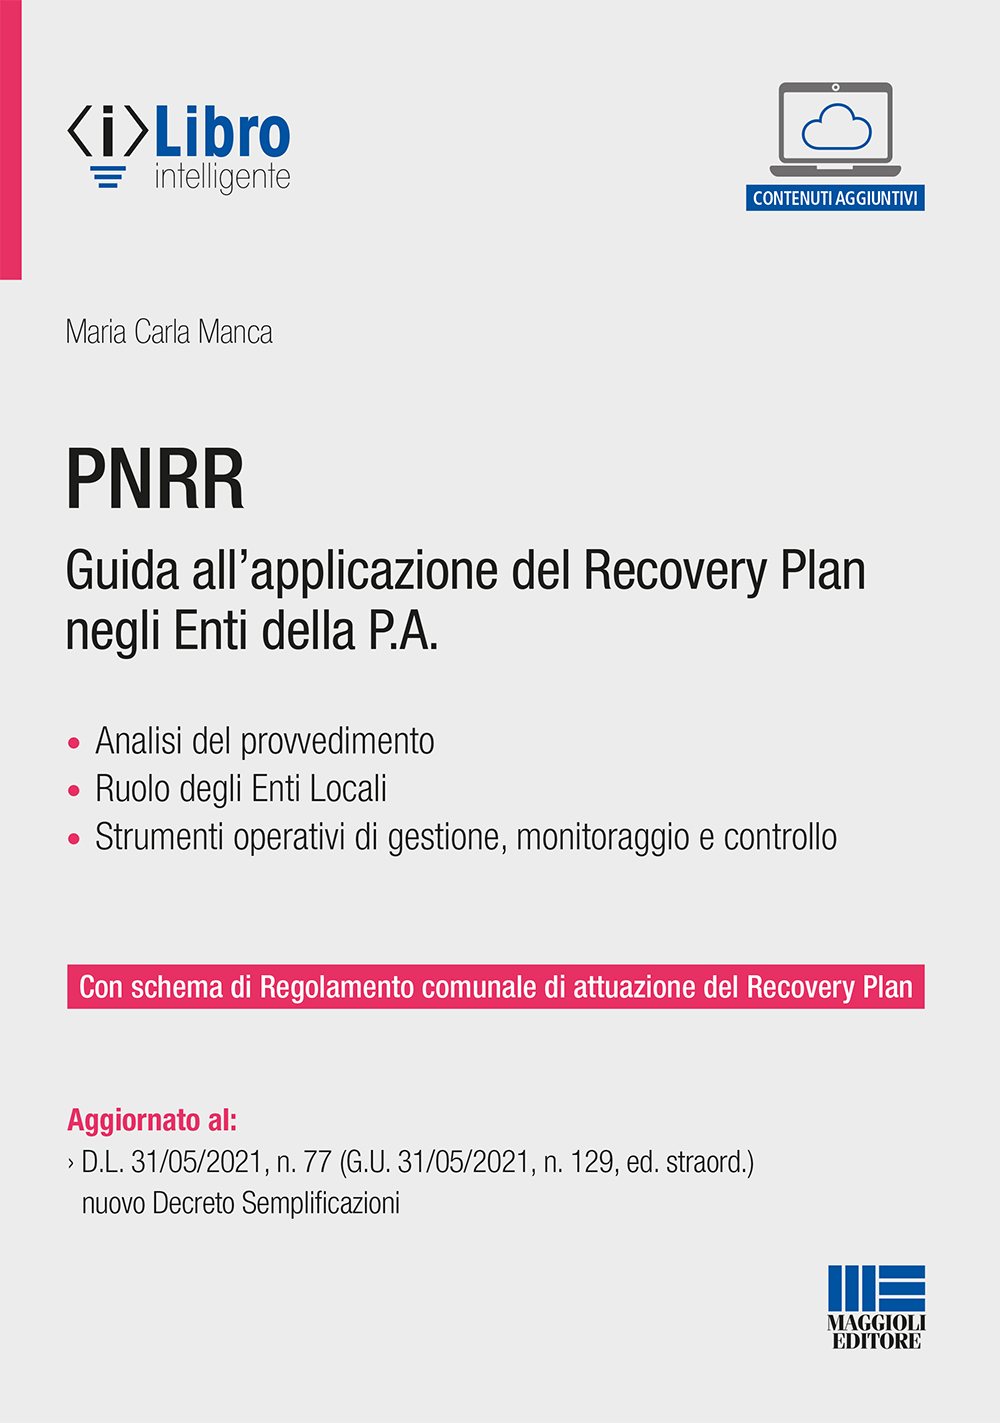 PNRR Guida all’applicazione del Recovery Plan negli Enti della P.A.